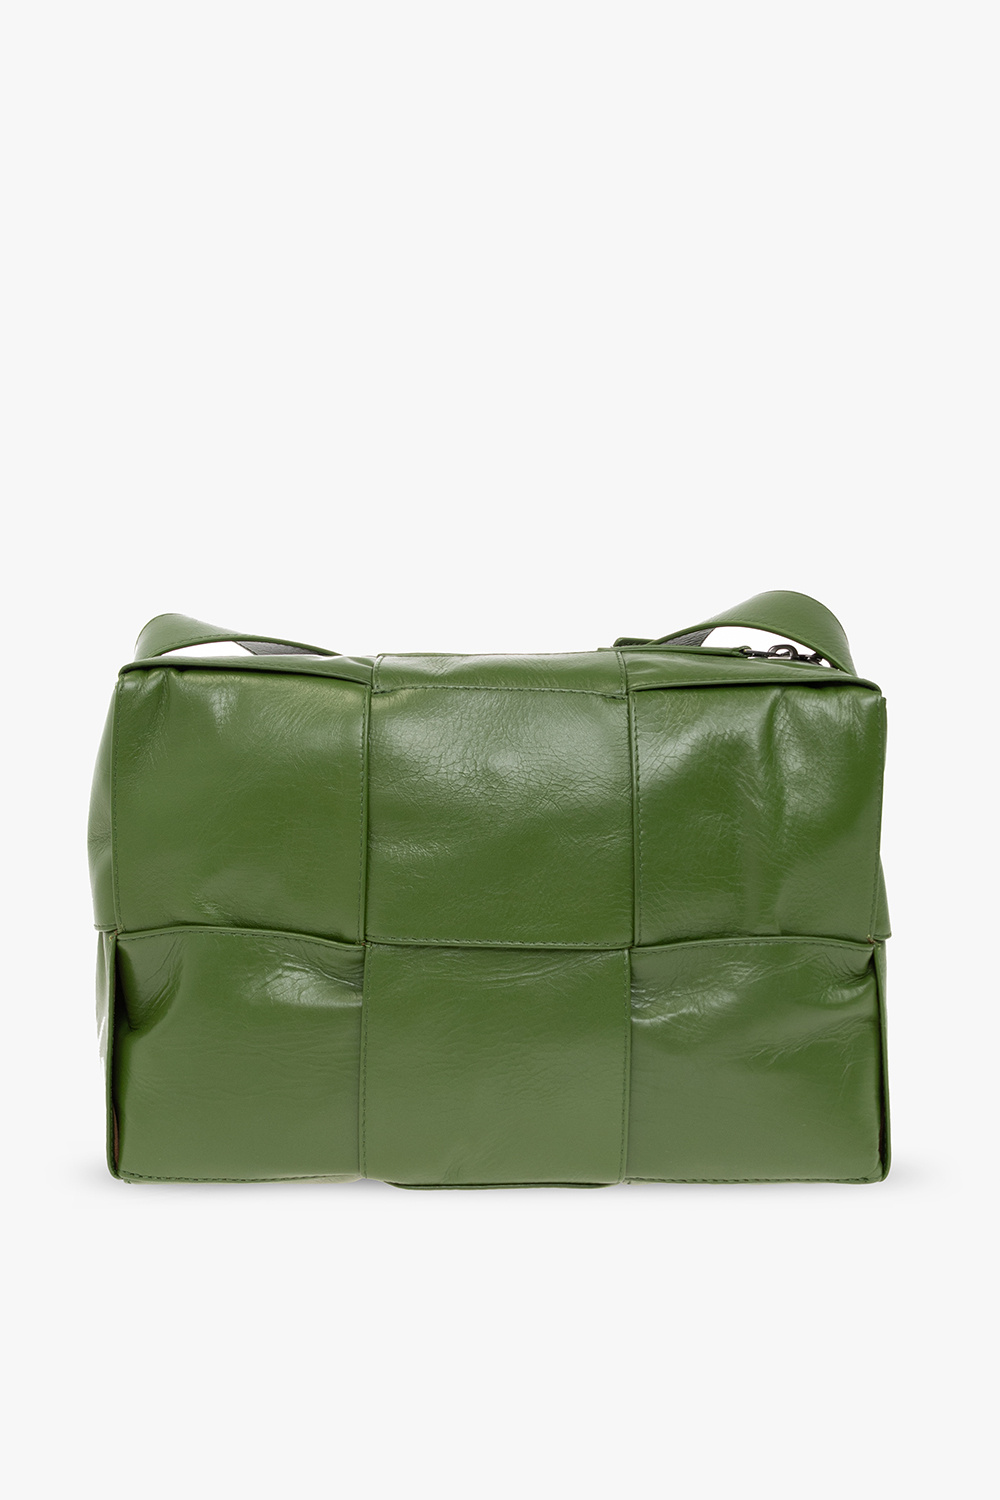 Bottega Veneta ‘Arco’ shoulder bag